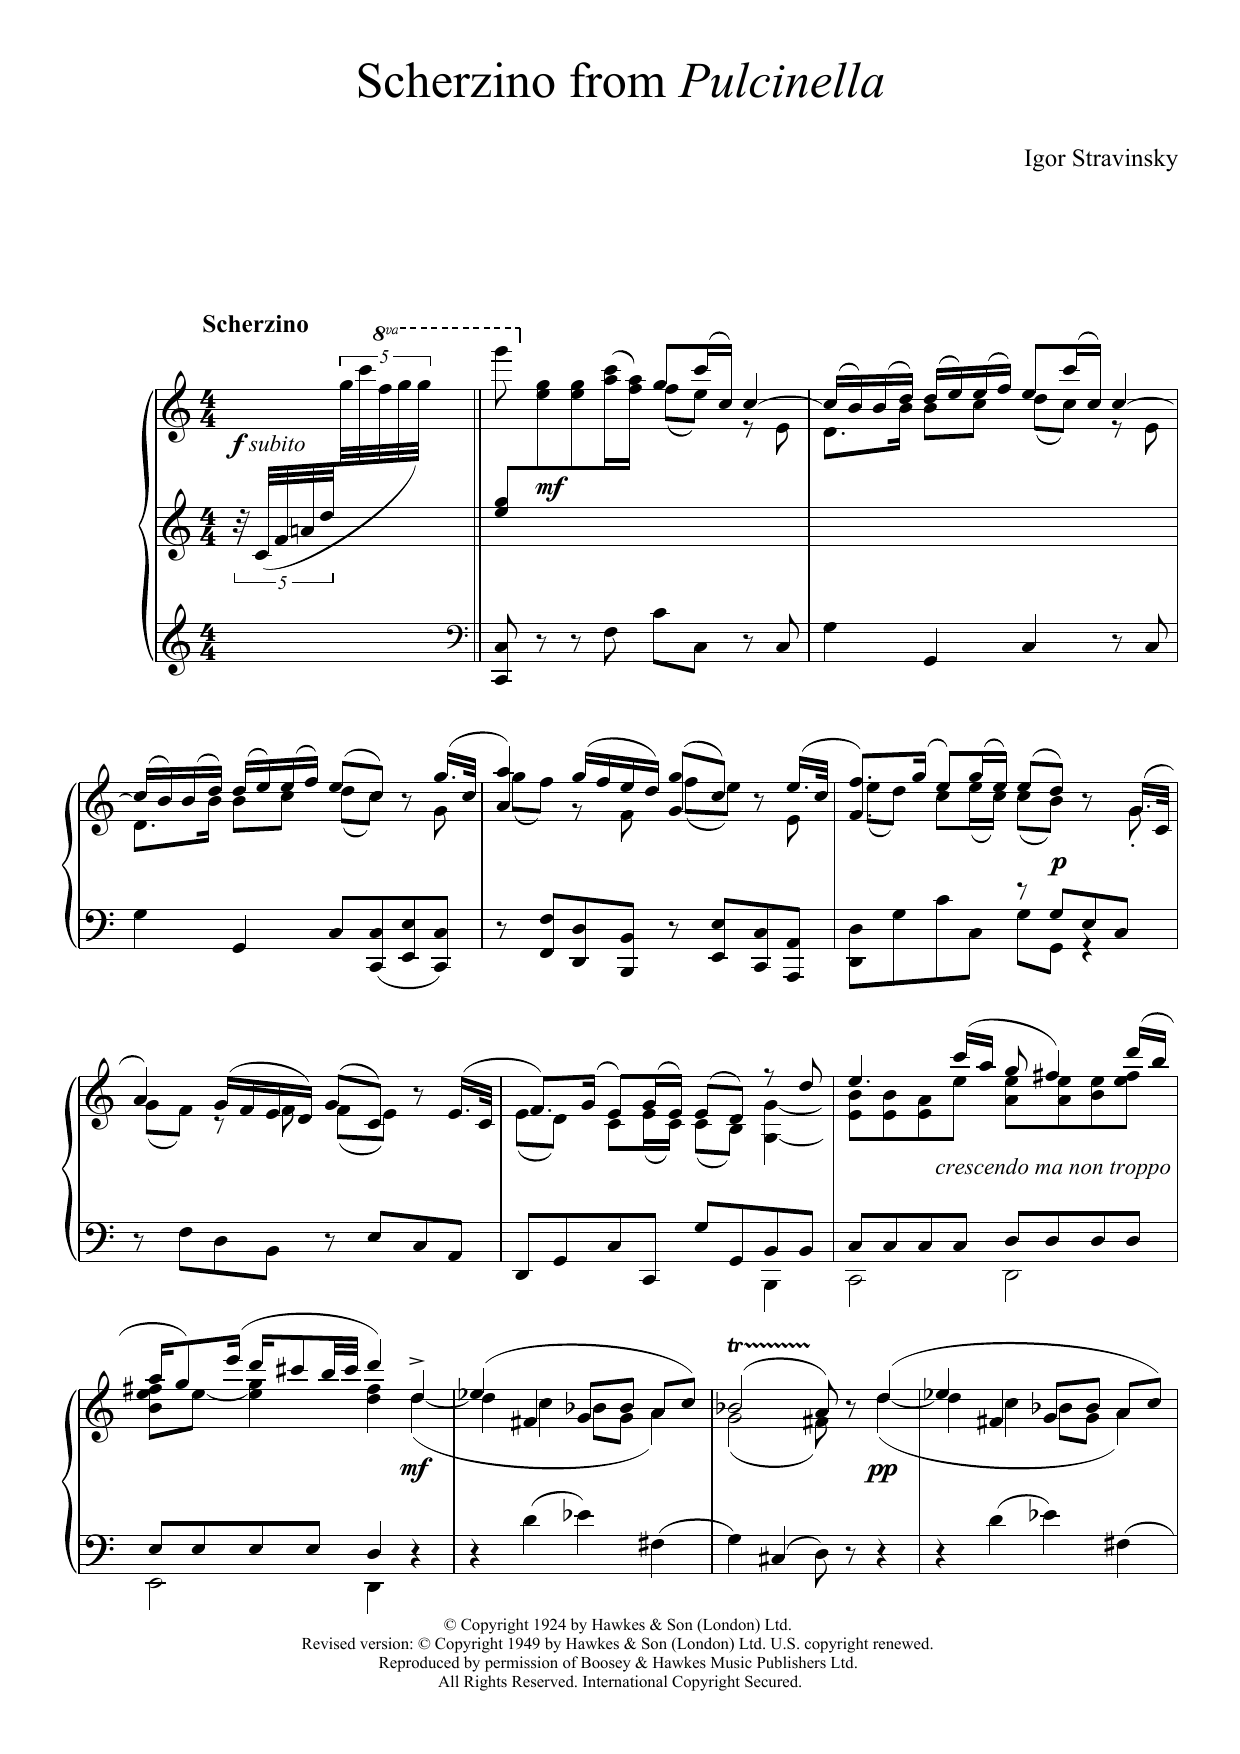 Download Igor Stravinsky Scherzino from Pulcinella Sheet Music